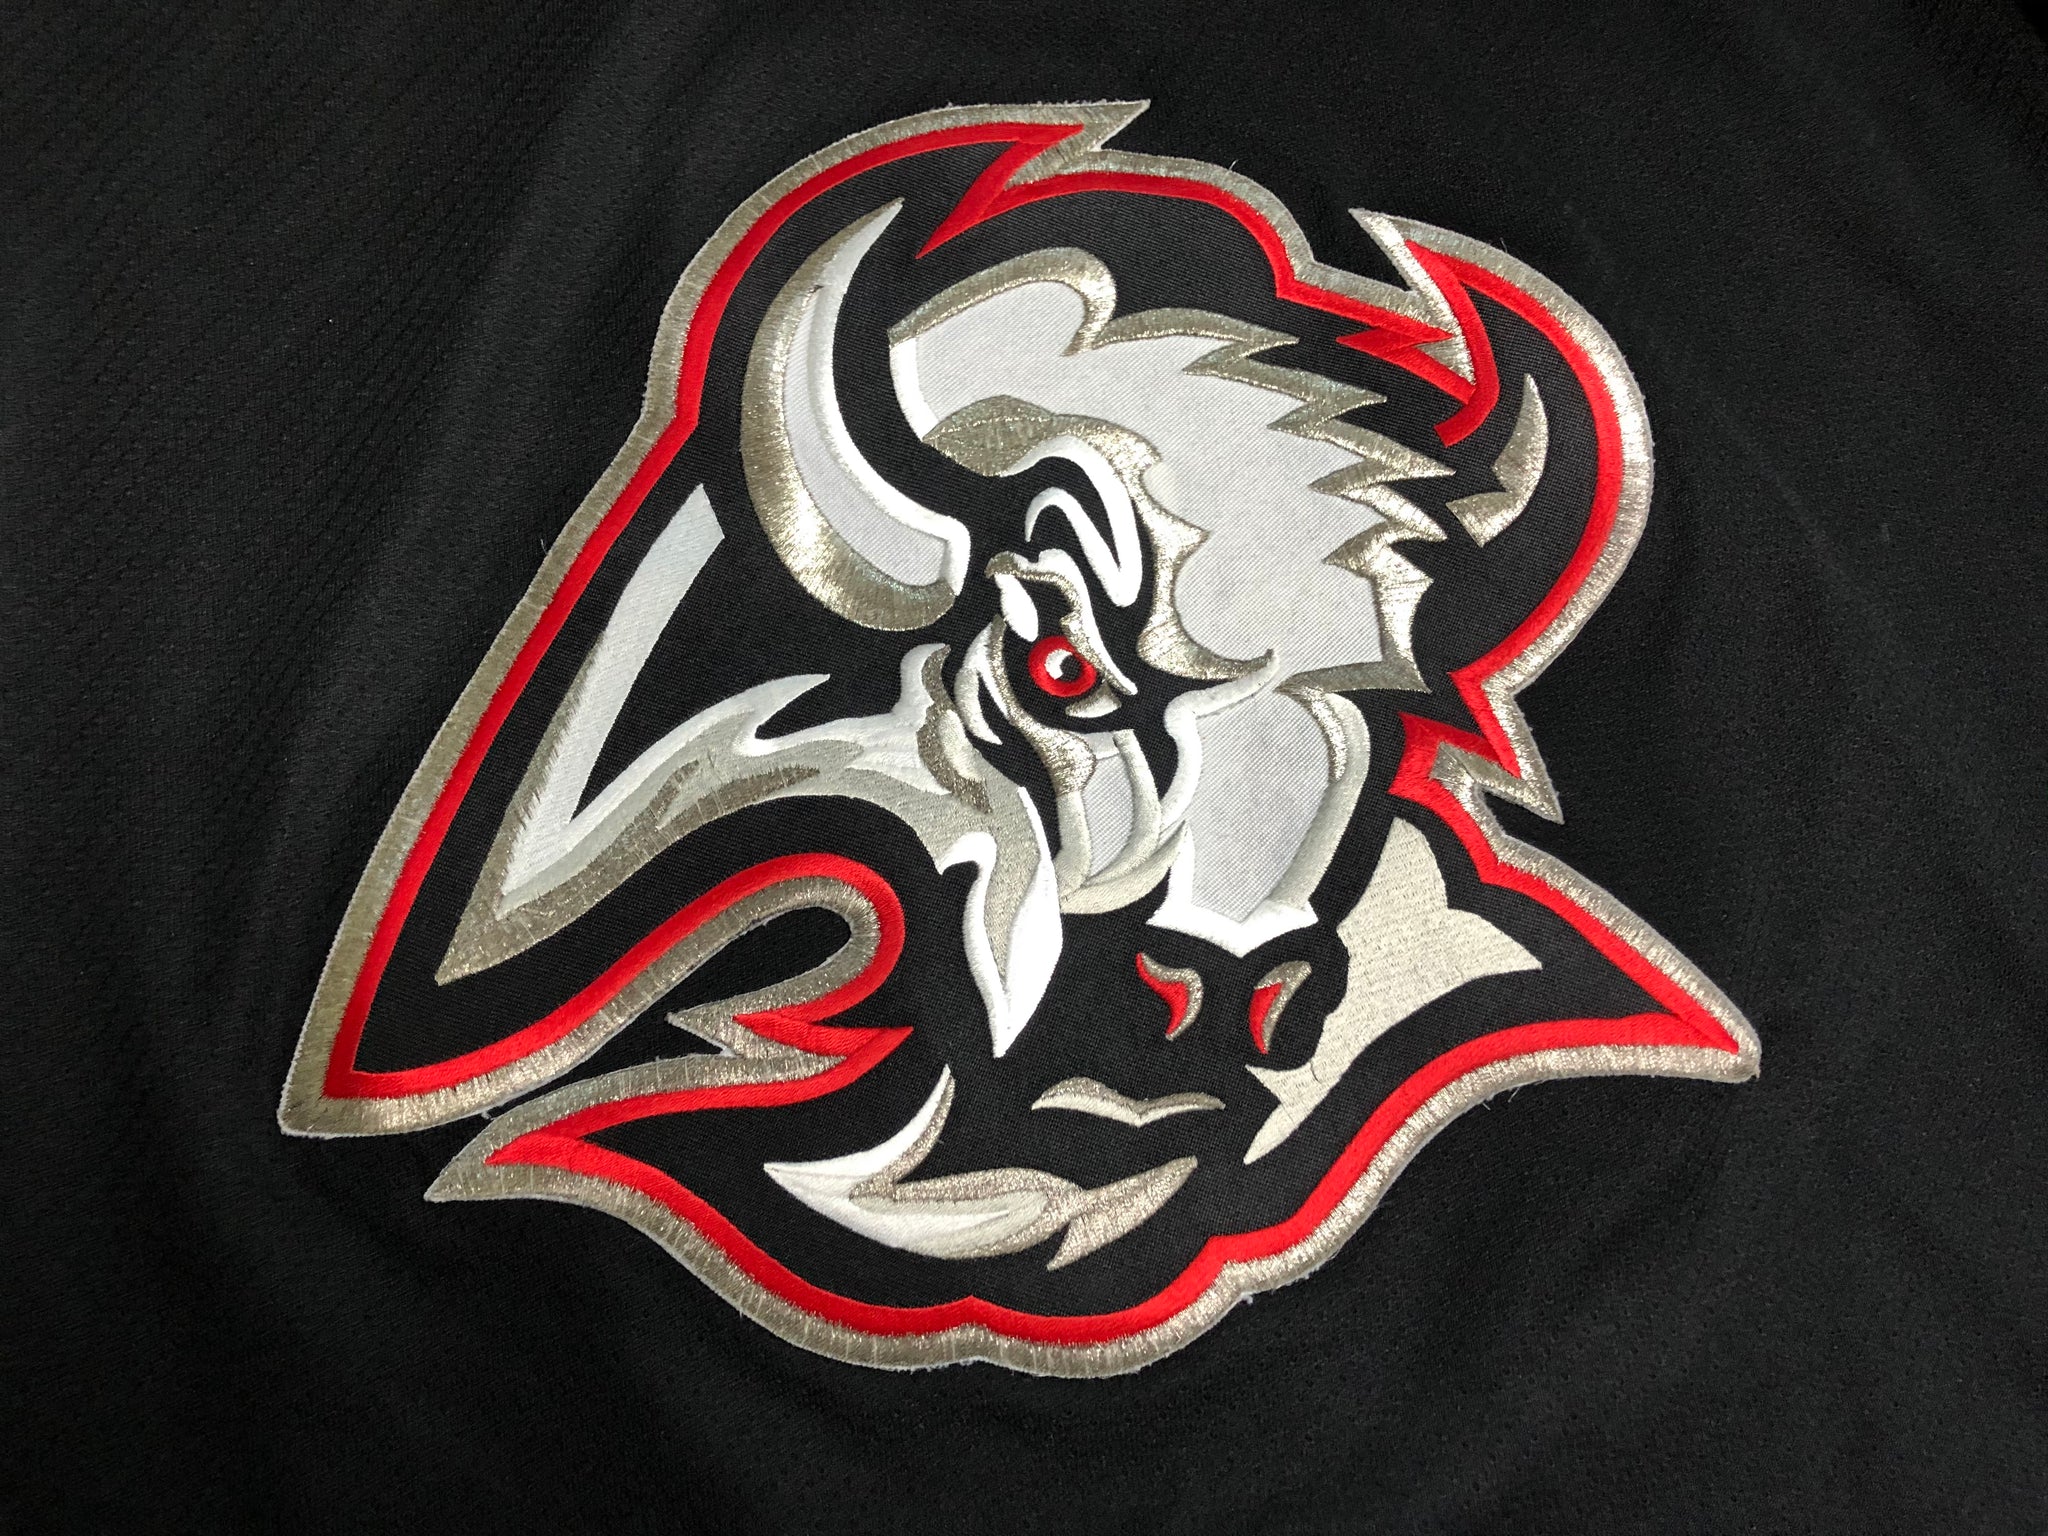 KOHO, Shirts, Vintage Koho Buffalo Sabres Pro Ice Hockey Jersey Nwt